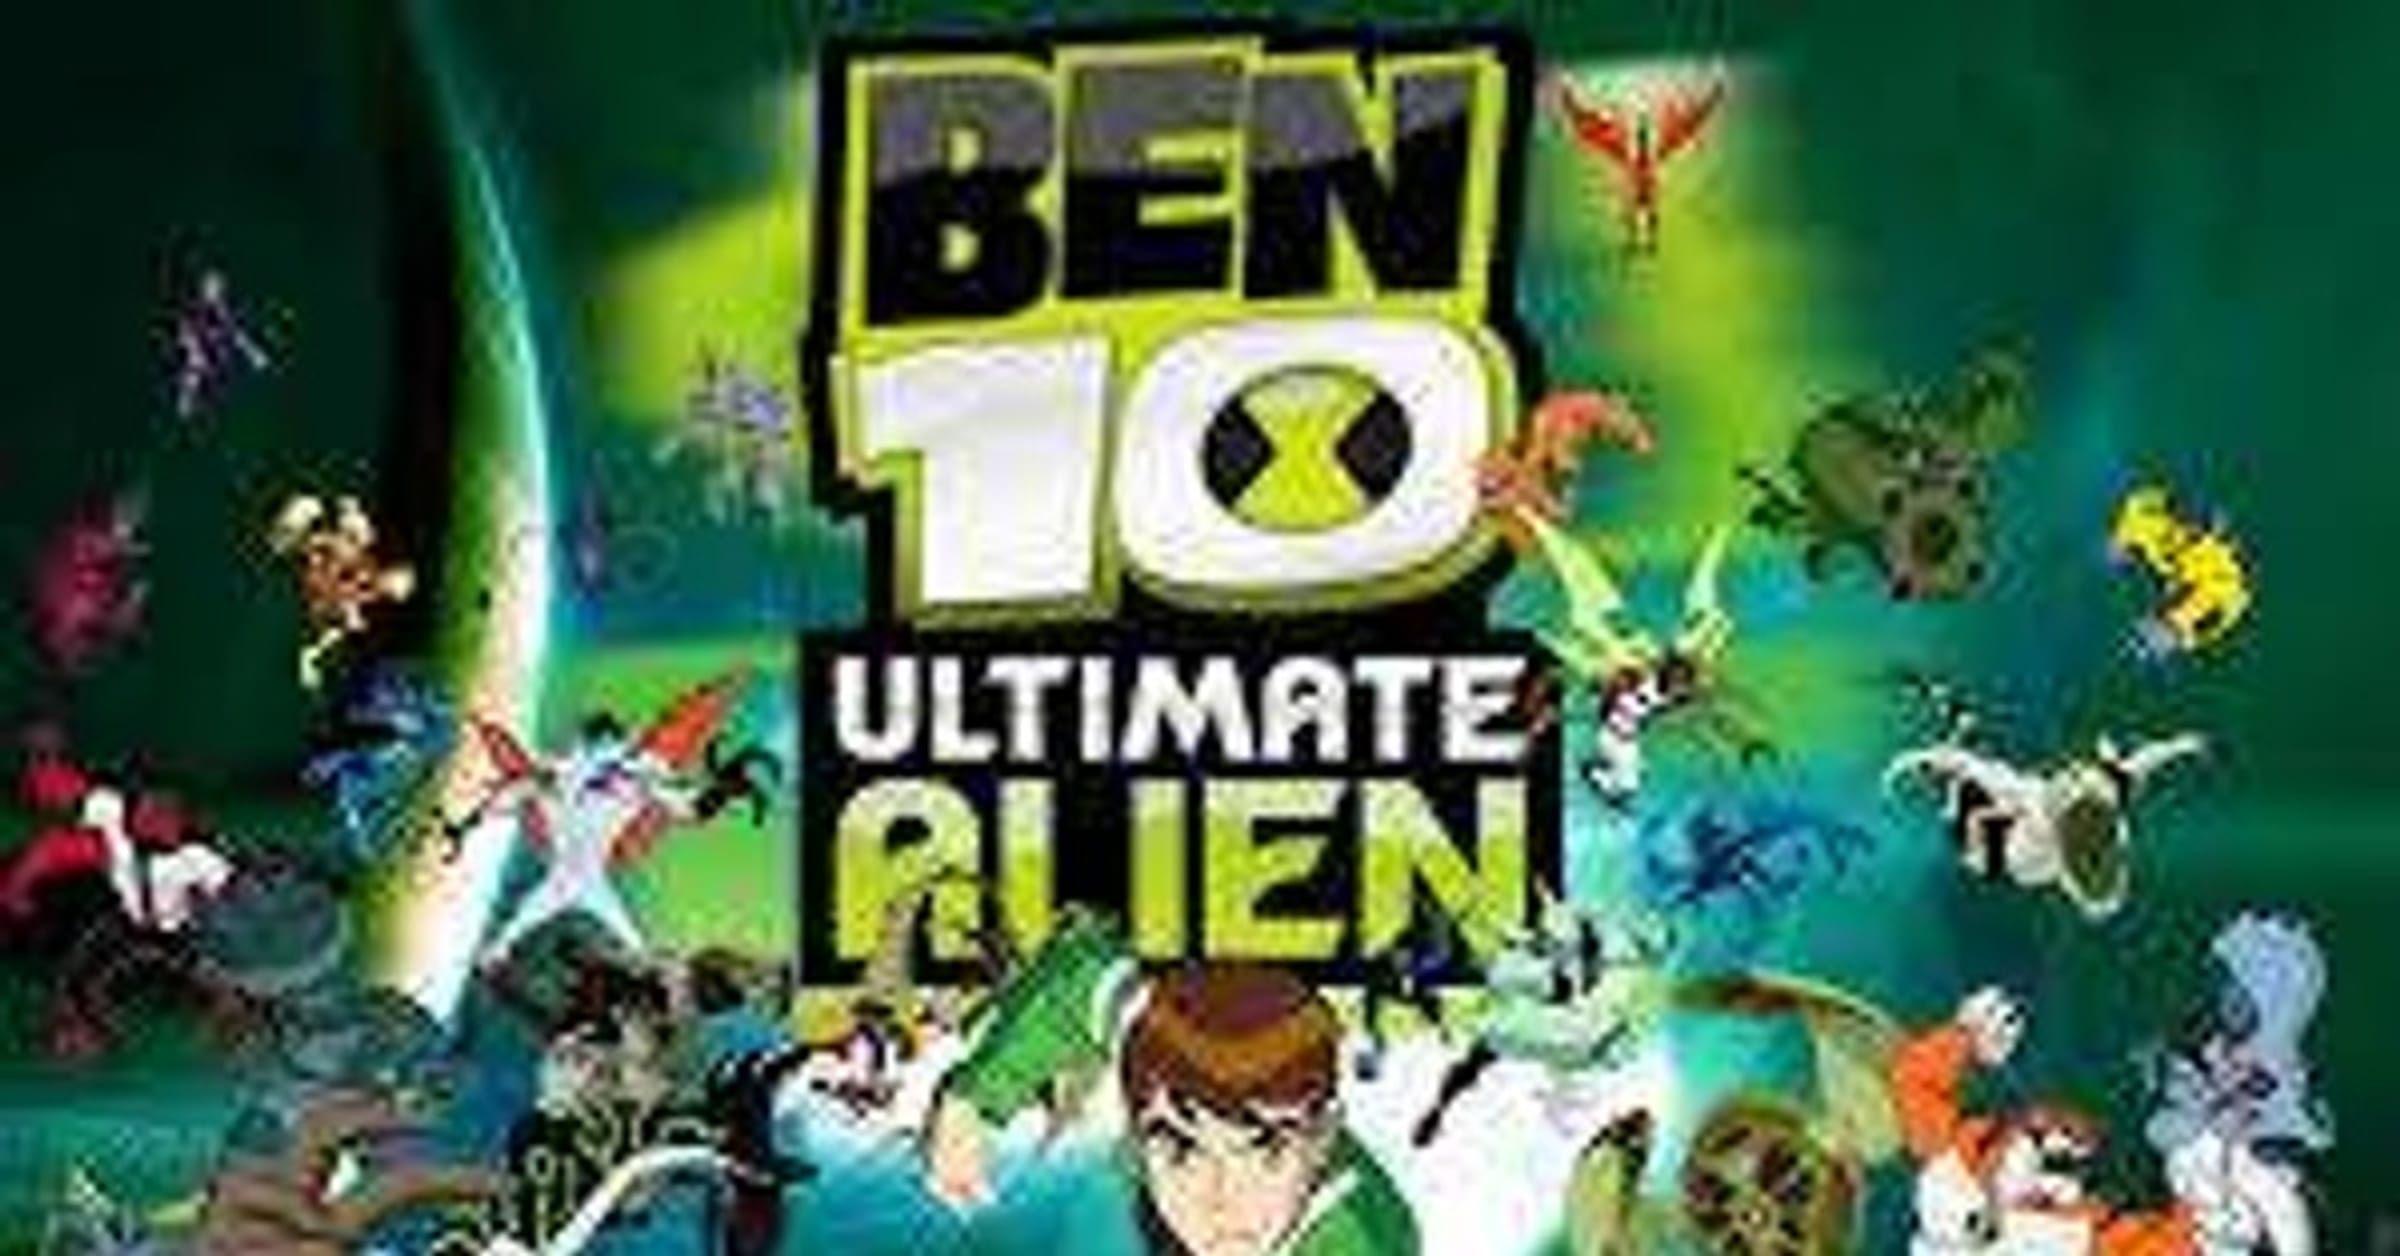 Ben 10: Ultimate Alien